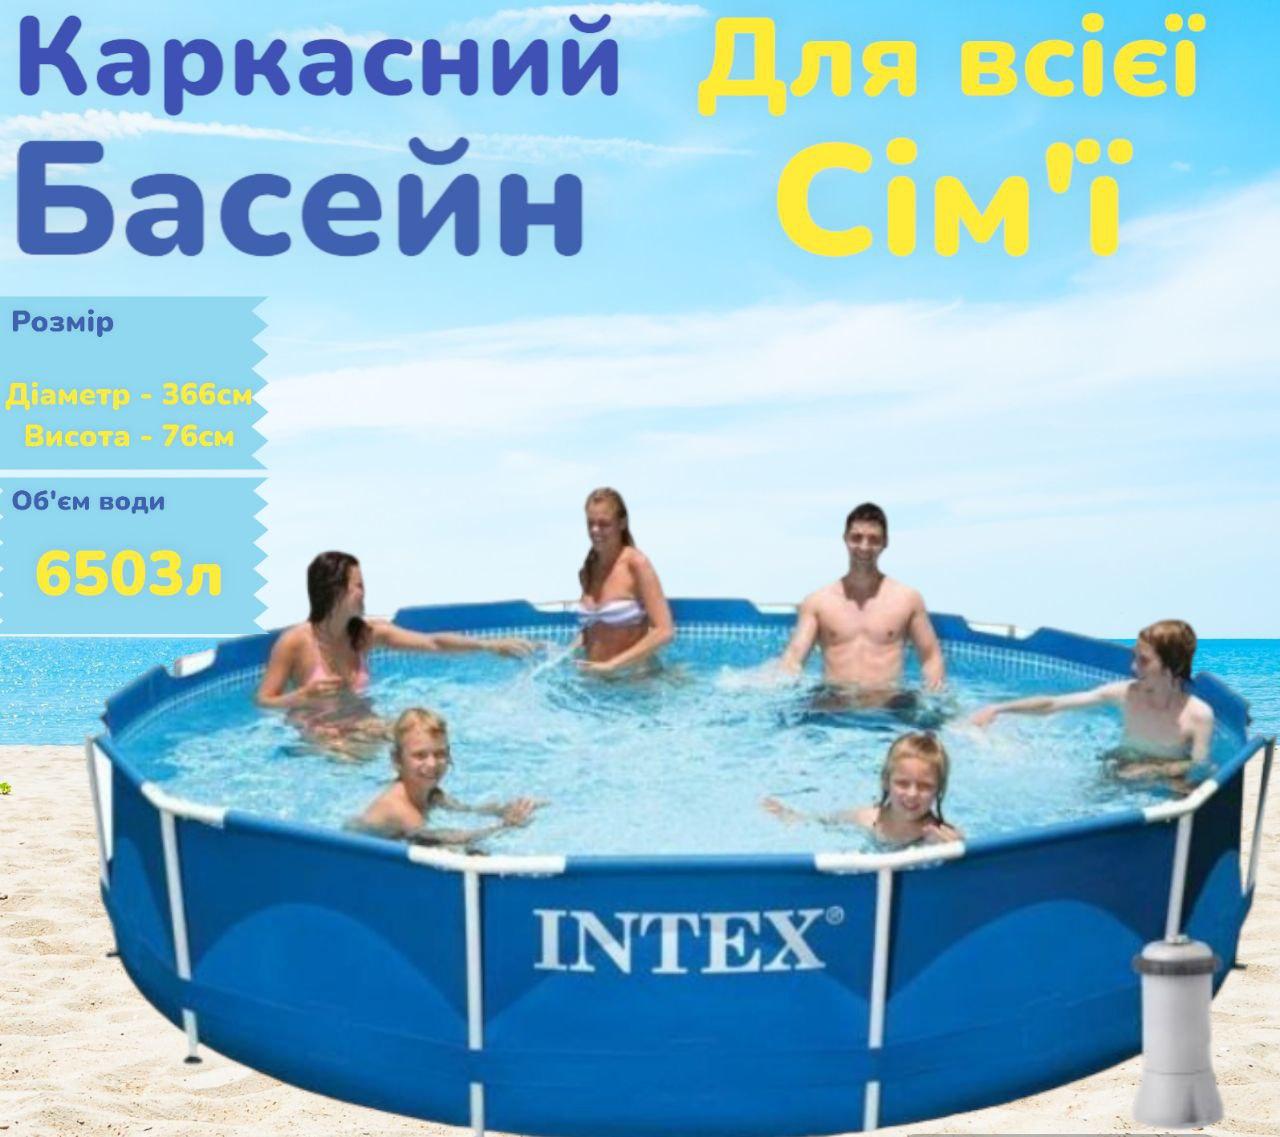 Круглий каркасний басейн збірний Intex з фільтром із ПВХ  для всієї родини